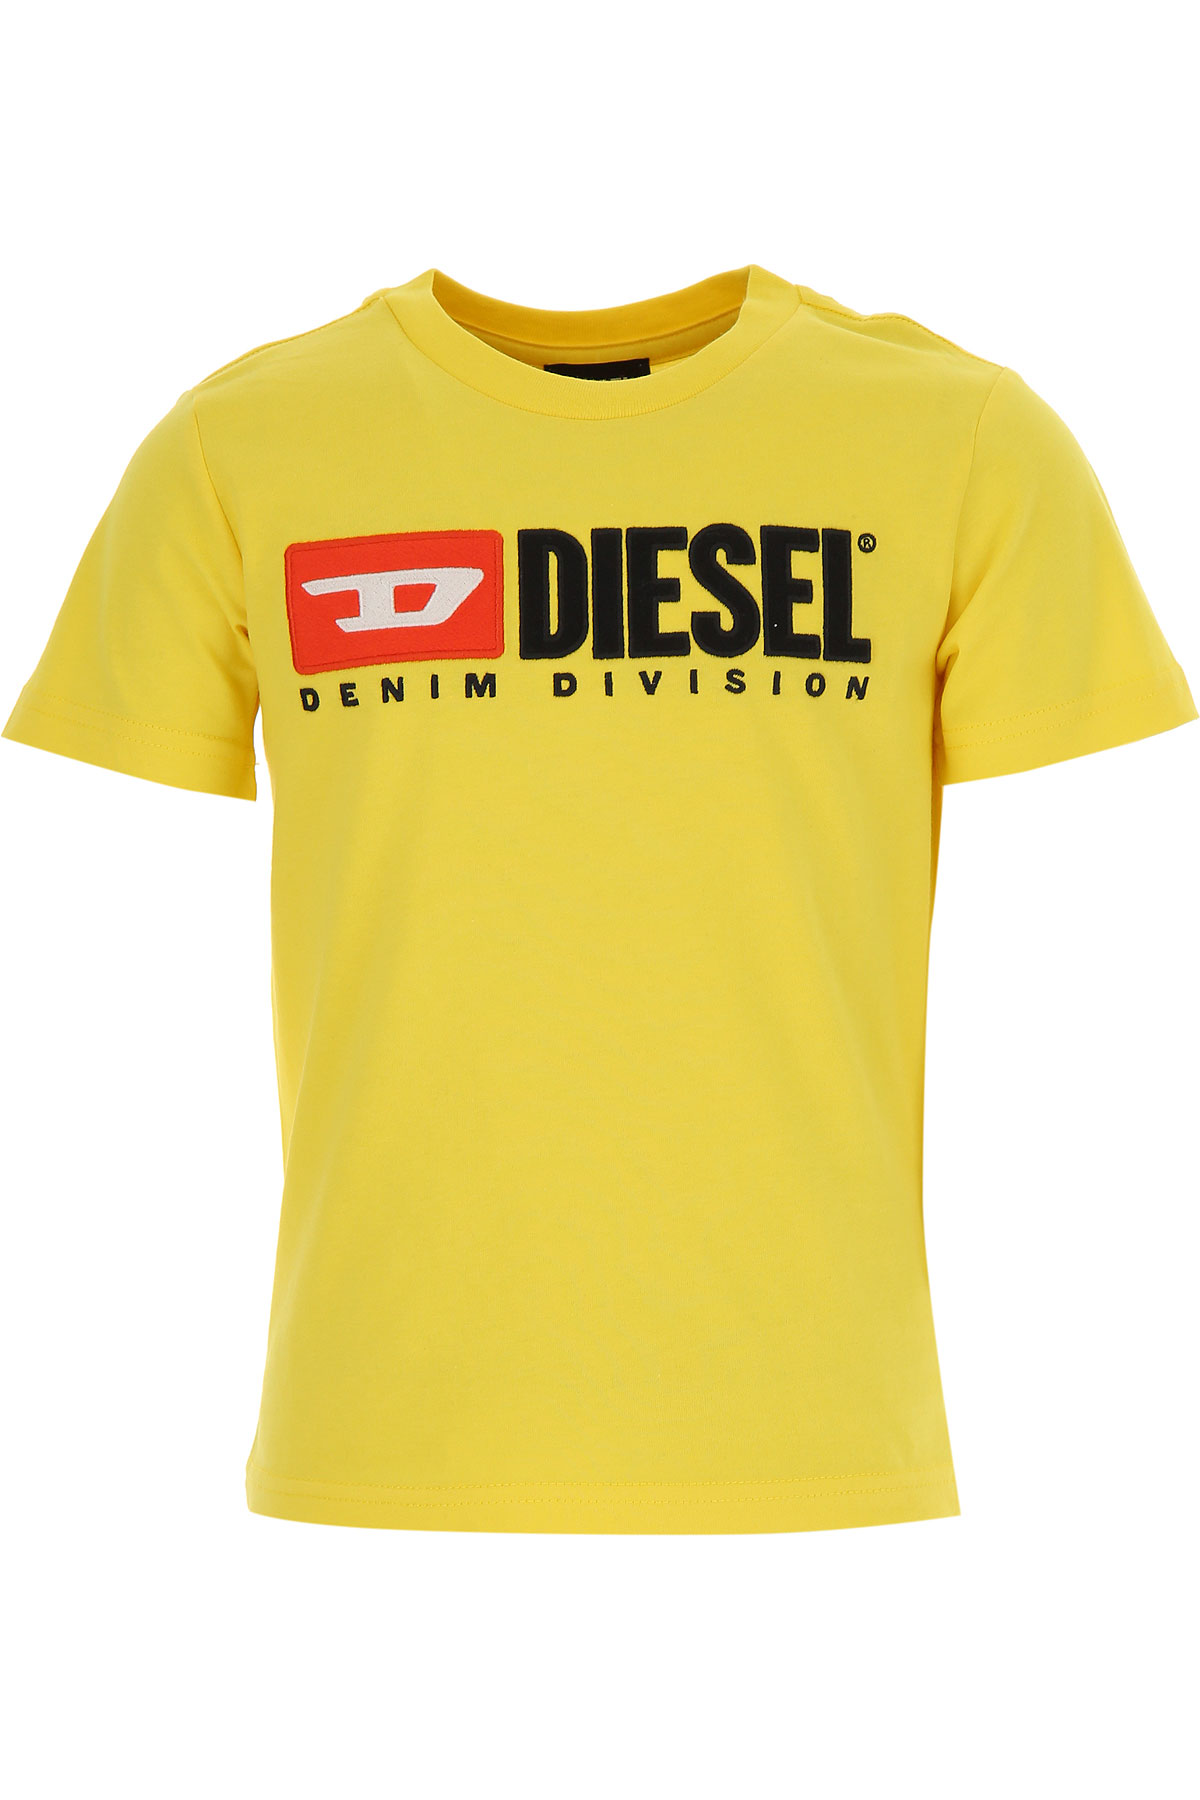 Diesel Kinder T-Shirt für Jungen, Gelb, Baumwolle, 2017, 10Y 12Y 8Y